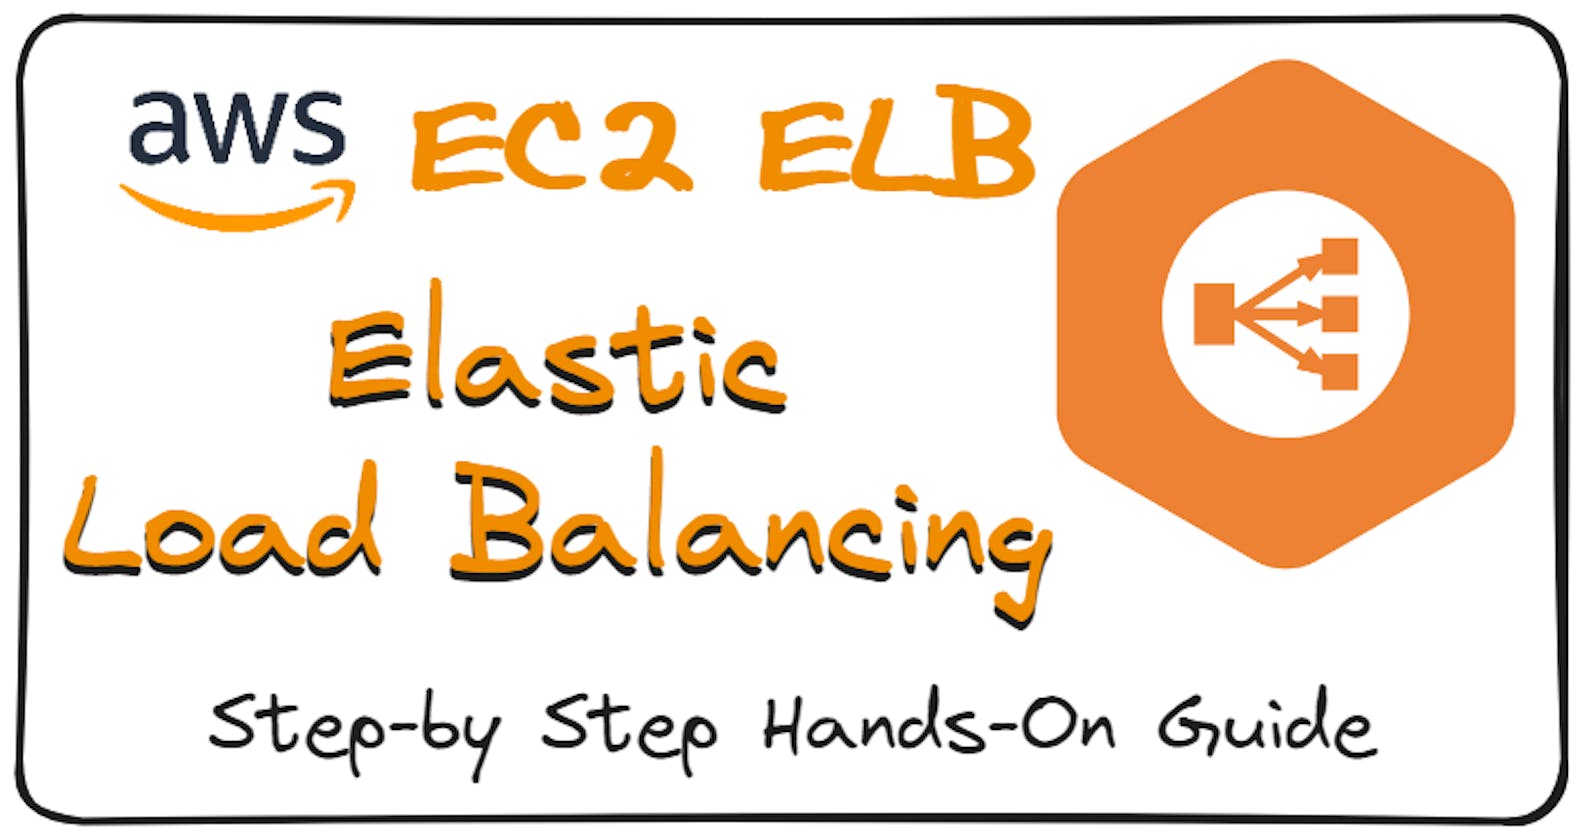 AWS EC2 ELB Elastic Load Balancing